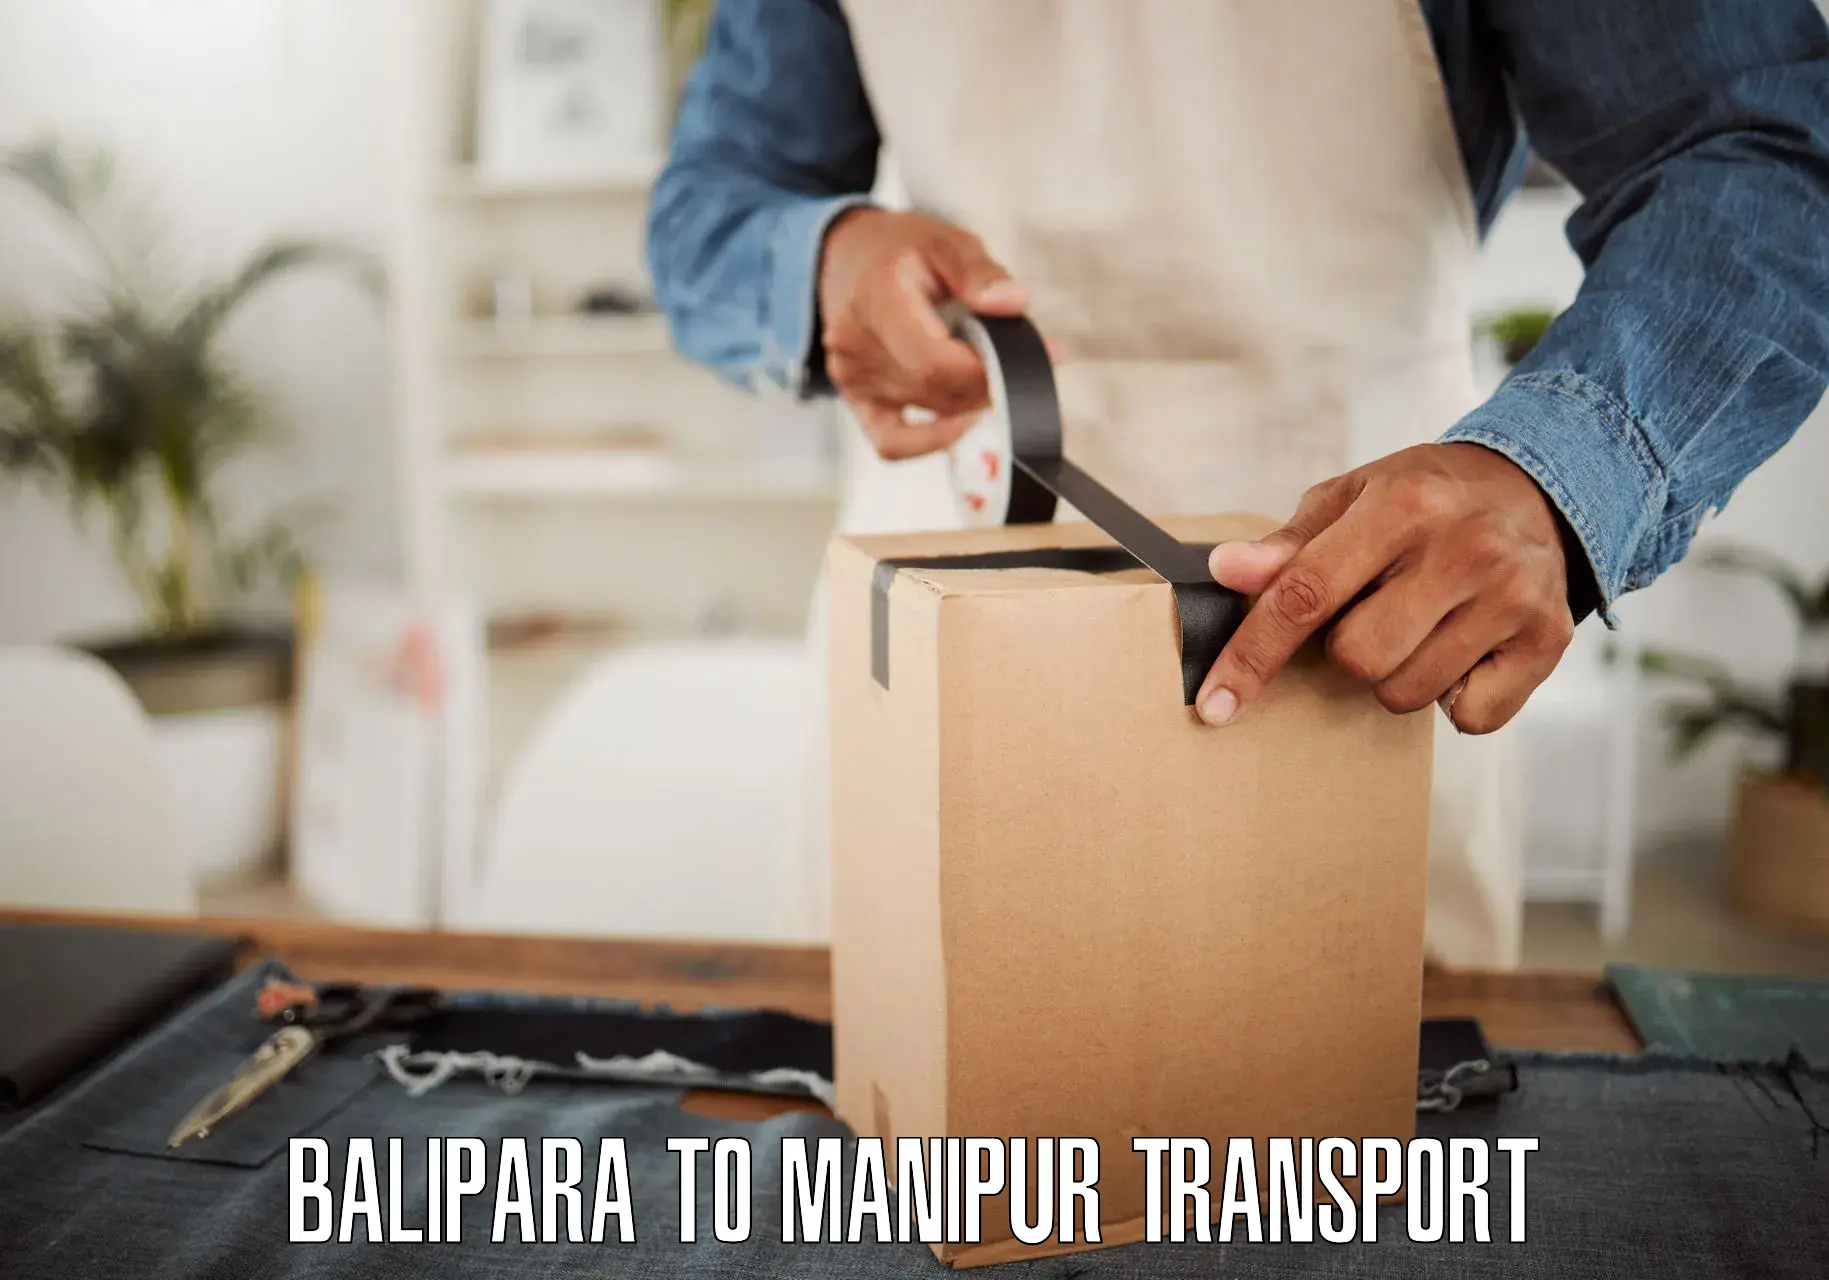 Furniture transport service Balipara to Manipur